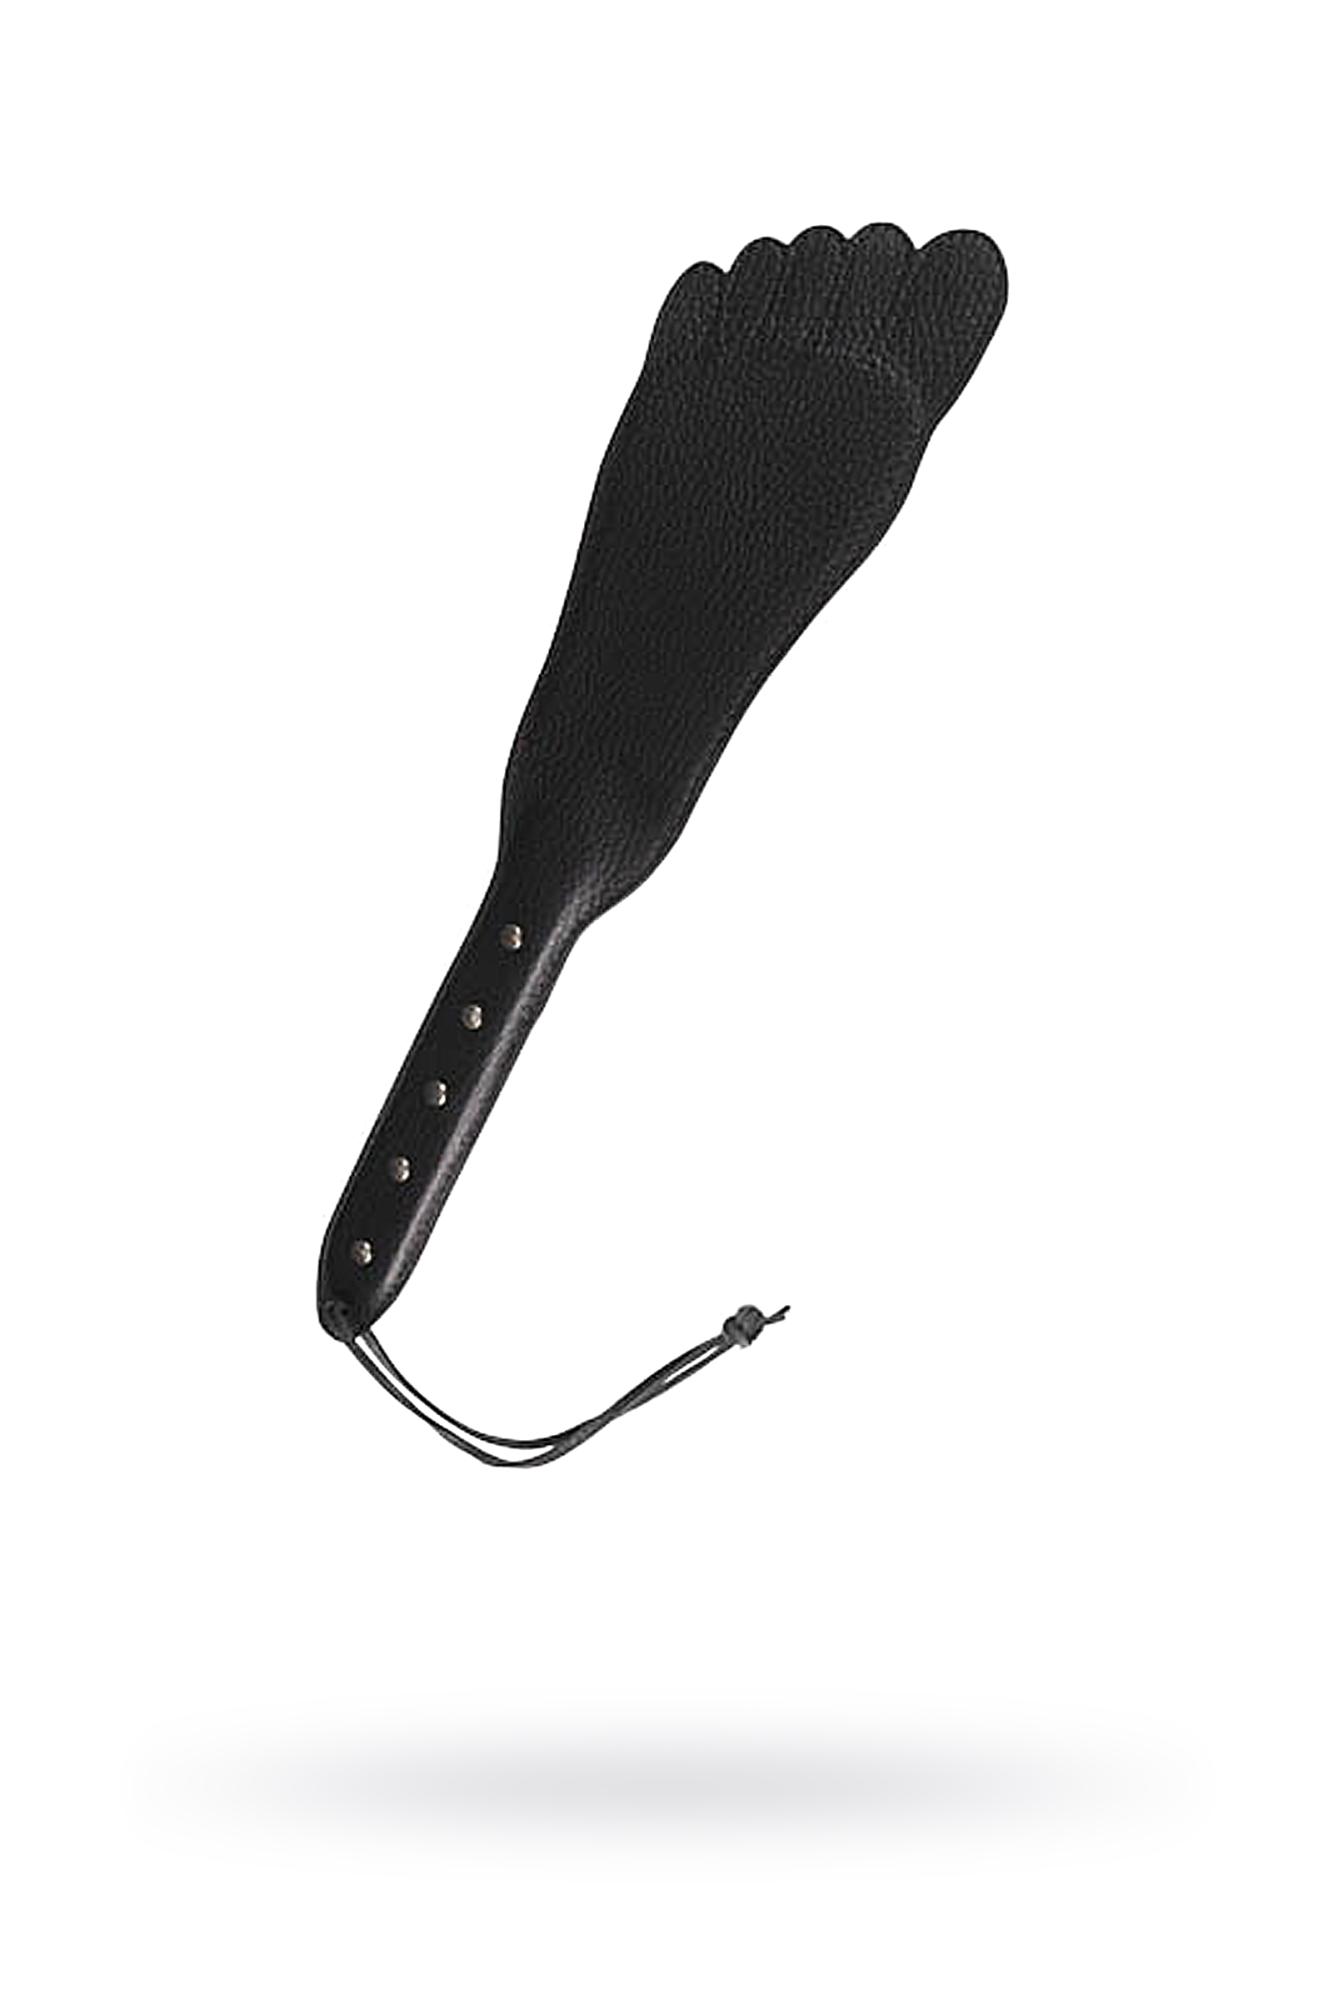 Sitabella - Хлопалка в виде кожаной пластины в форме ступни с жесткой рукоятью, 34,5 см (черный)